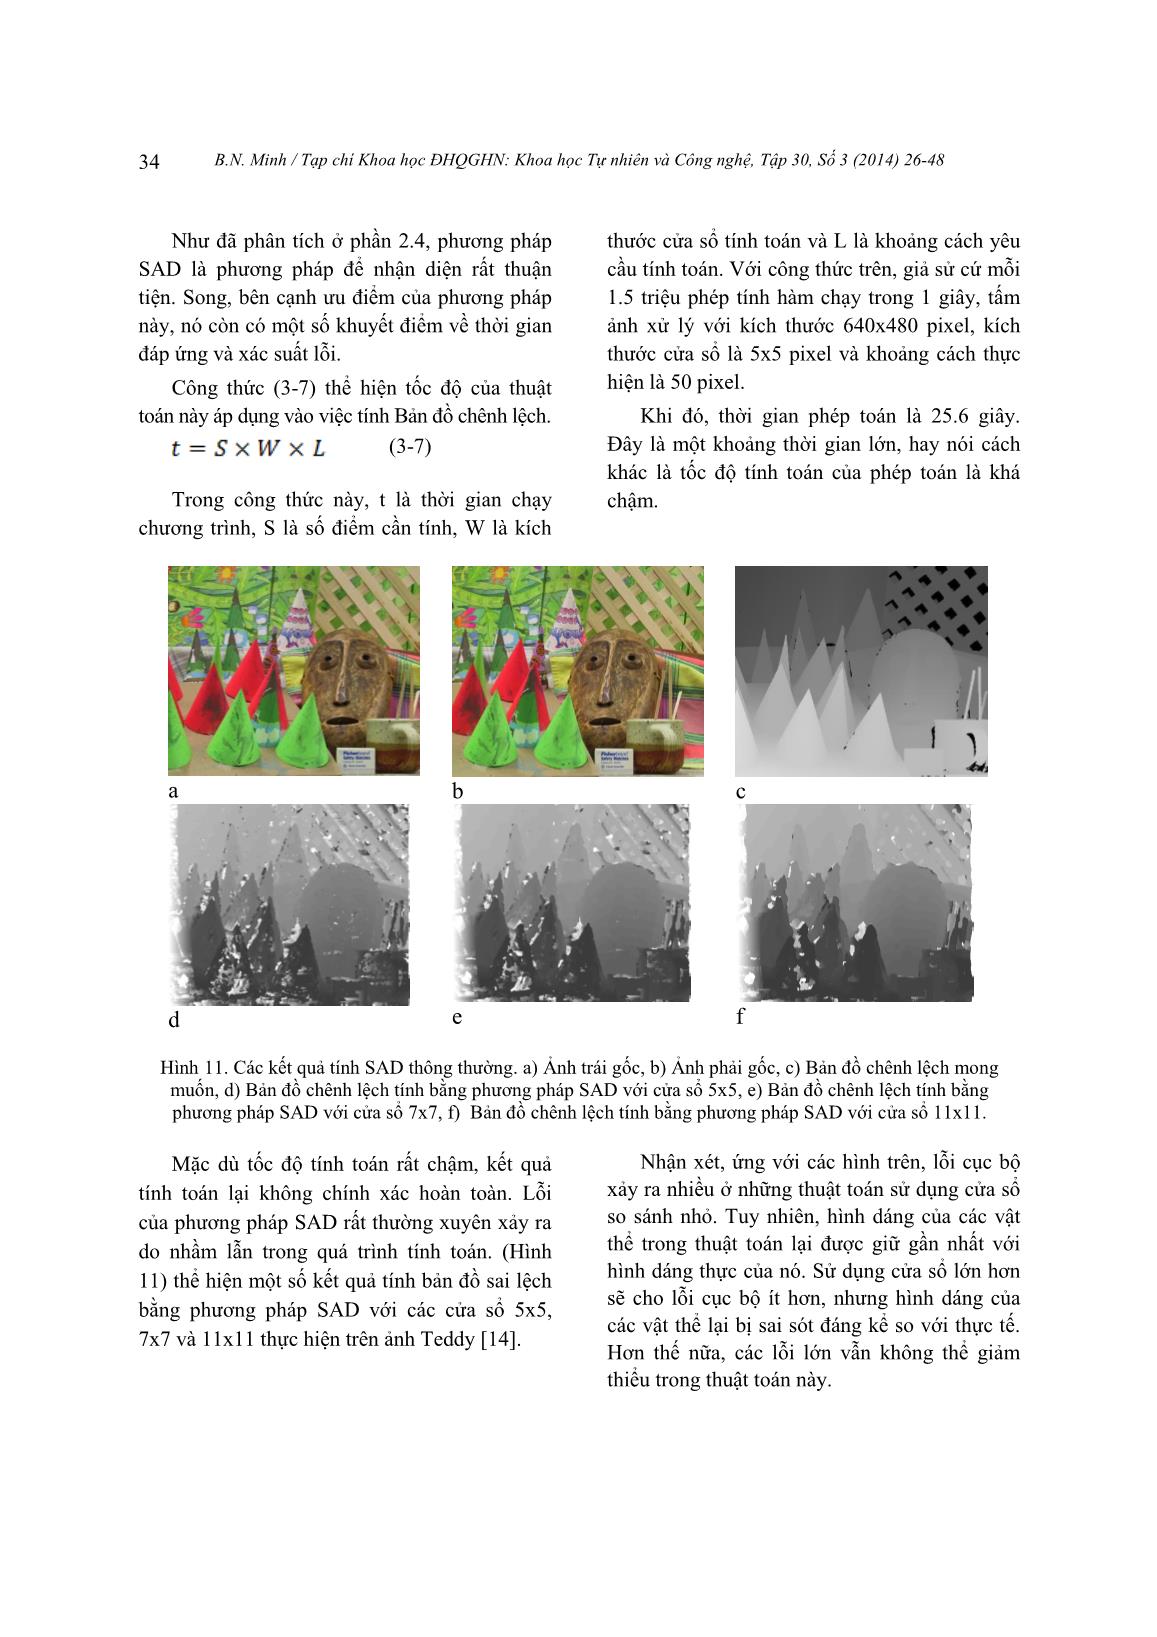 Nghiên cứu so sánh các thuật toán xử lý ảnh tính độ sâu ảnh stereo ứng dụng trong hệ thống camera thị giác trang 9